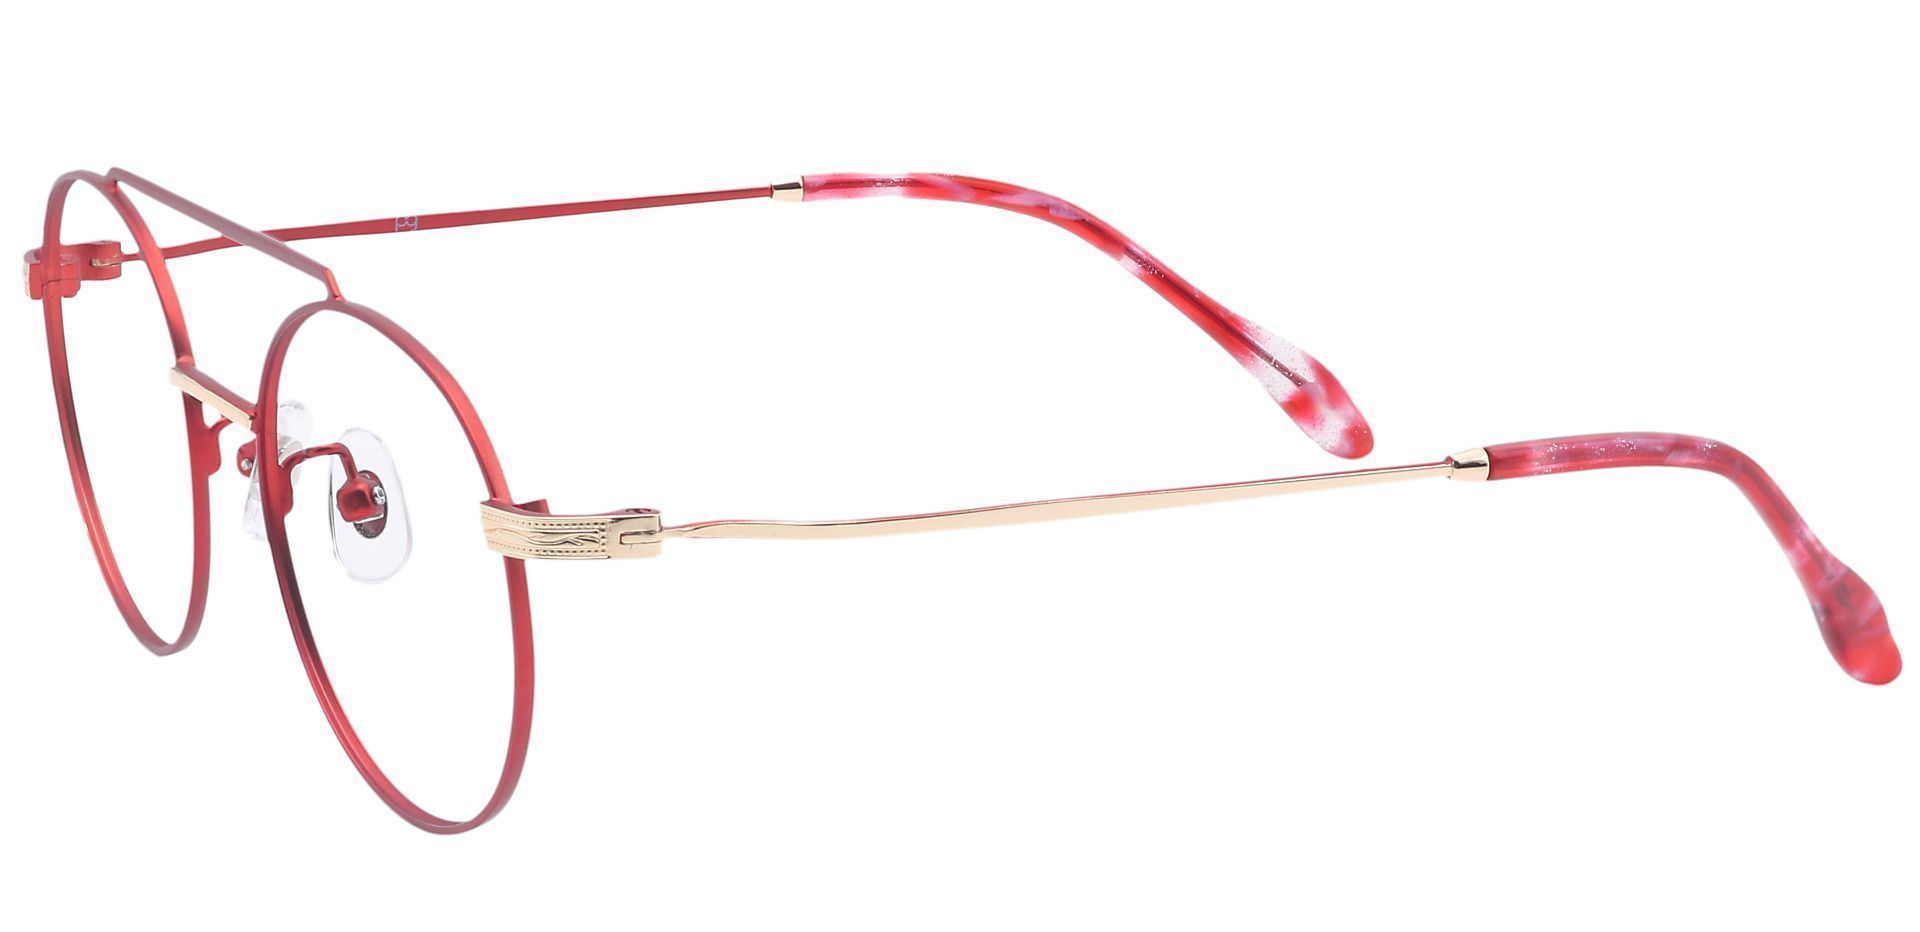 Julia Oval Non-Rx Glasses - Red